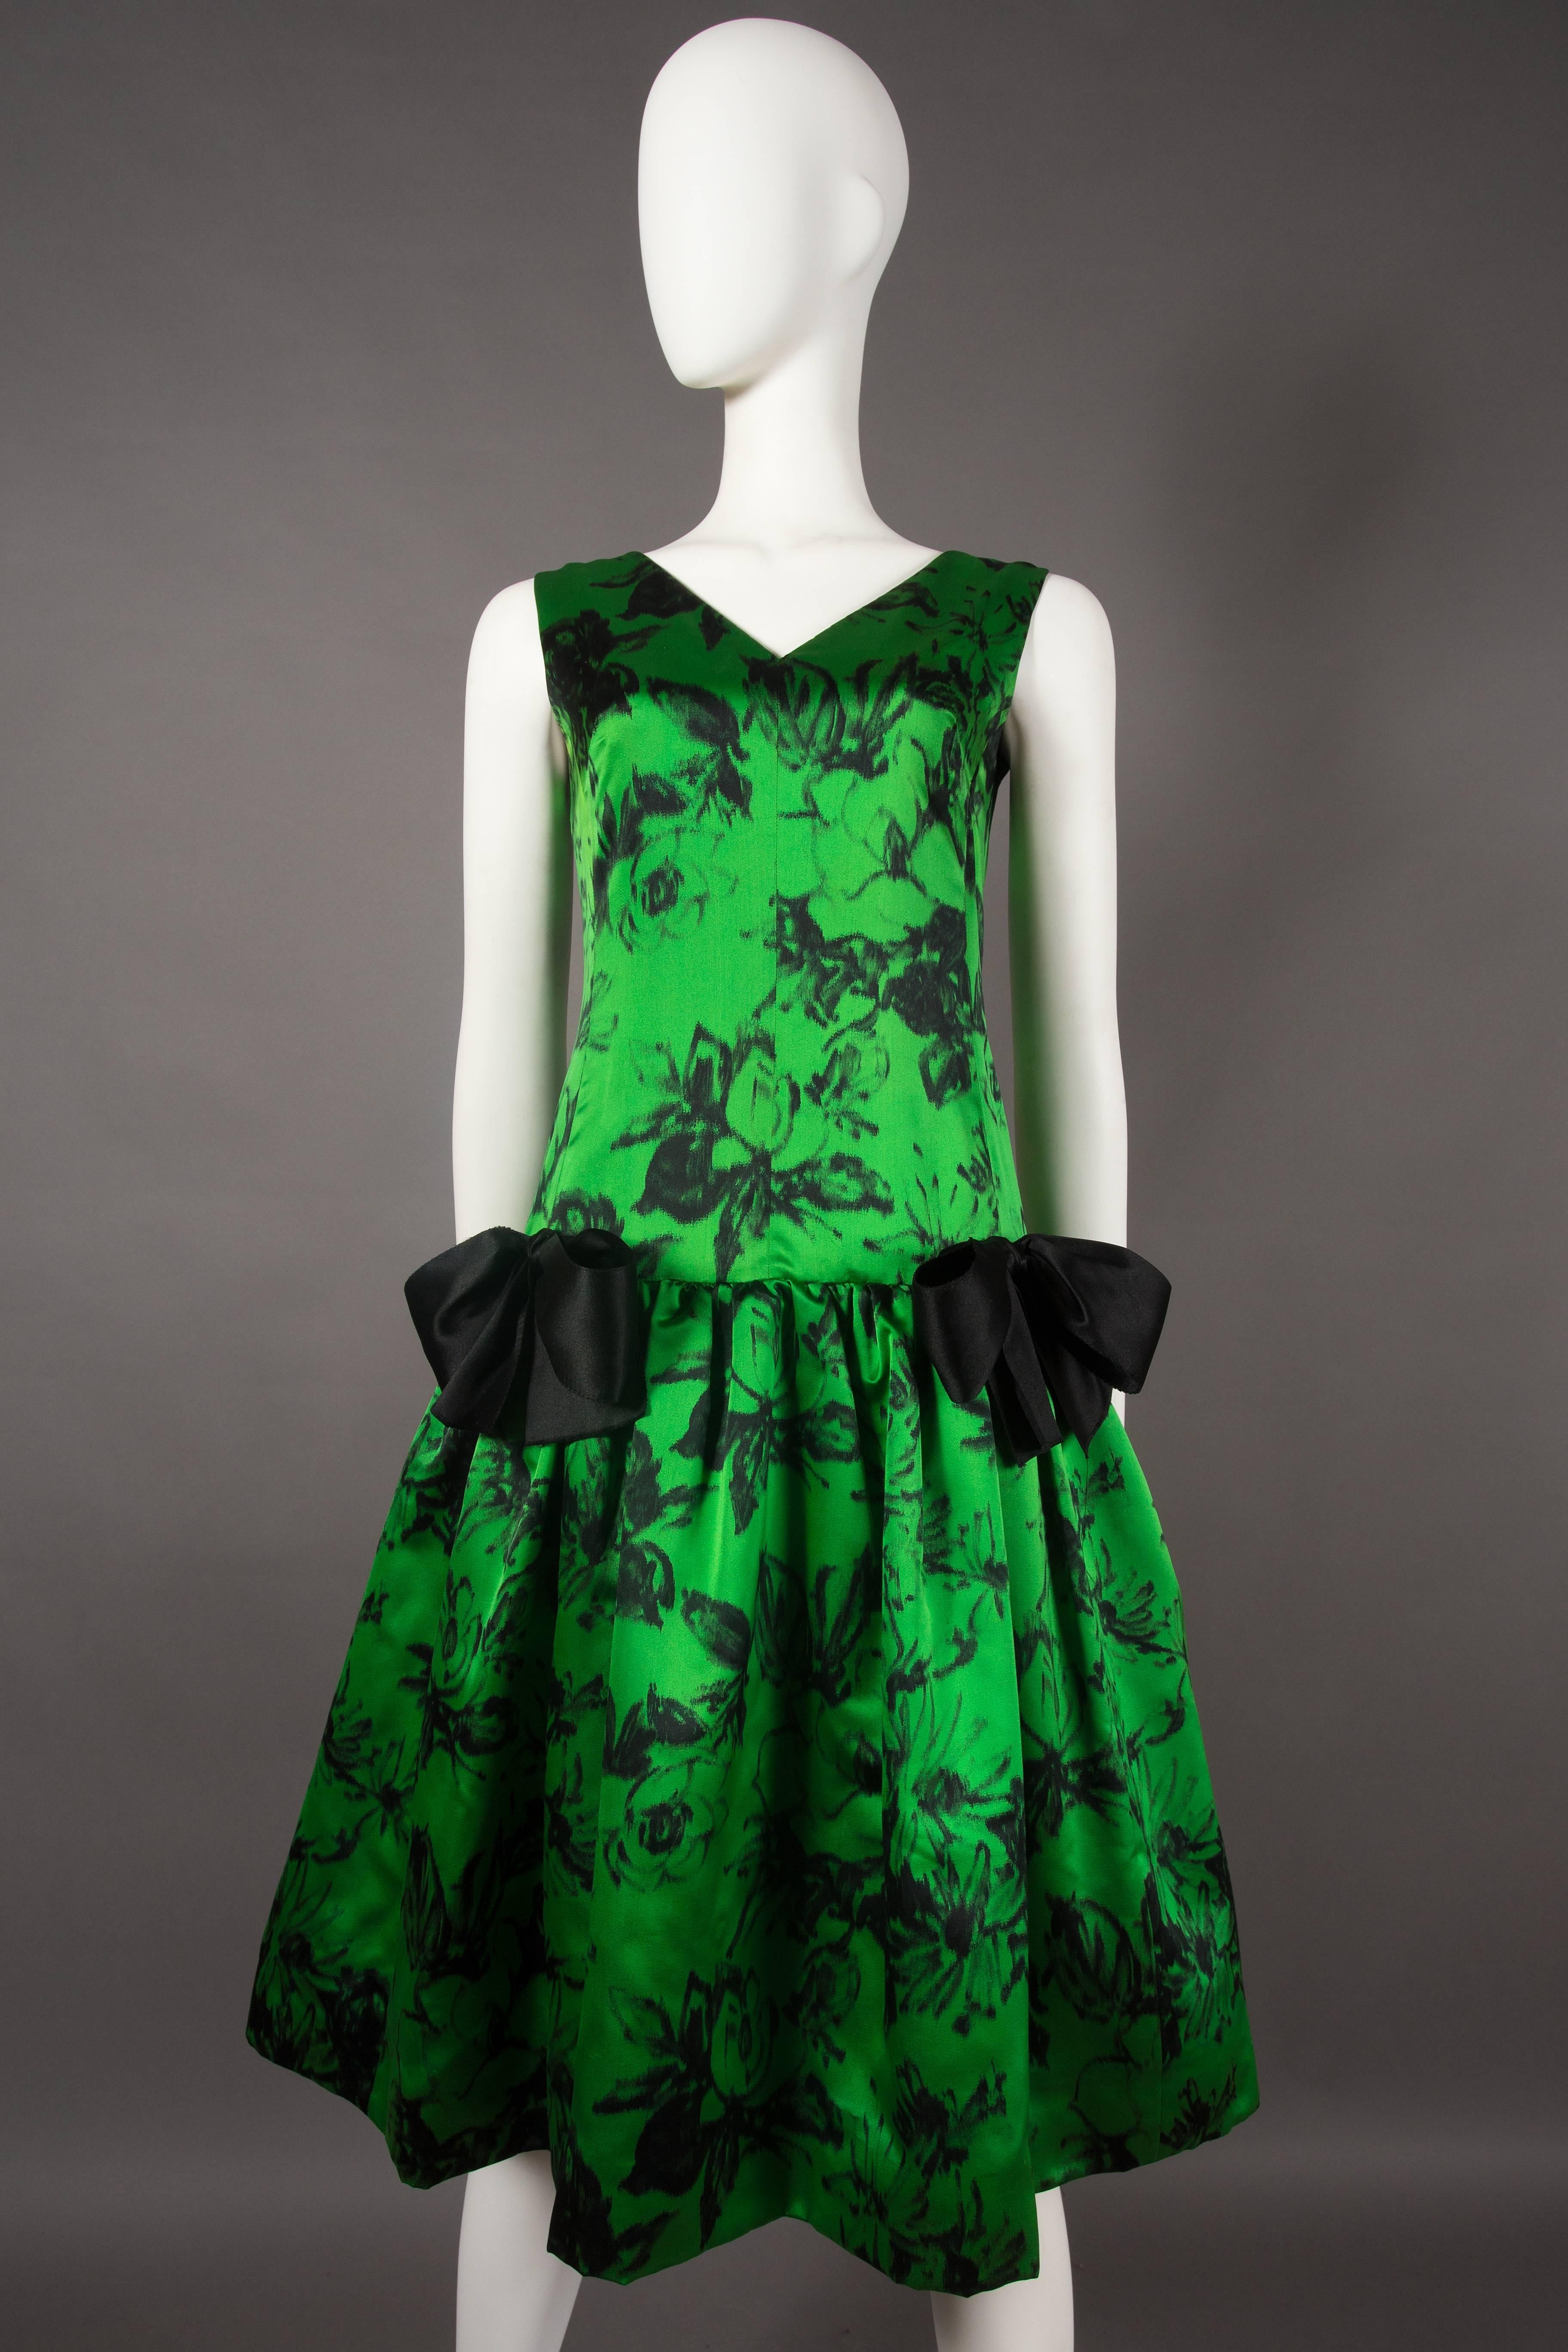 Voici une robe de cocktail exquise et exceptionnellement rare de Paul Daunay, un véritable trésor datant d'environ 1952-57. Fabrice, cette robe en soie fine, ornée d'un imprimé floral abstrait, est d'une élégance et d'une sophistication